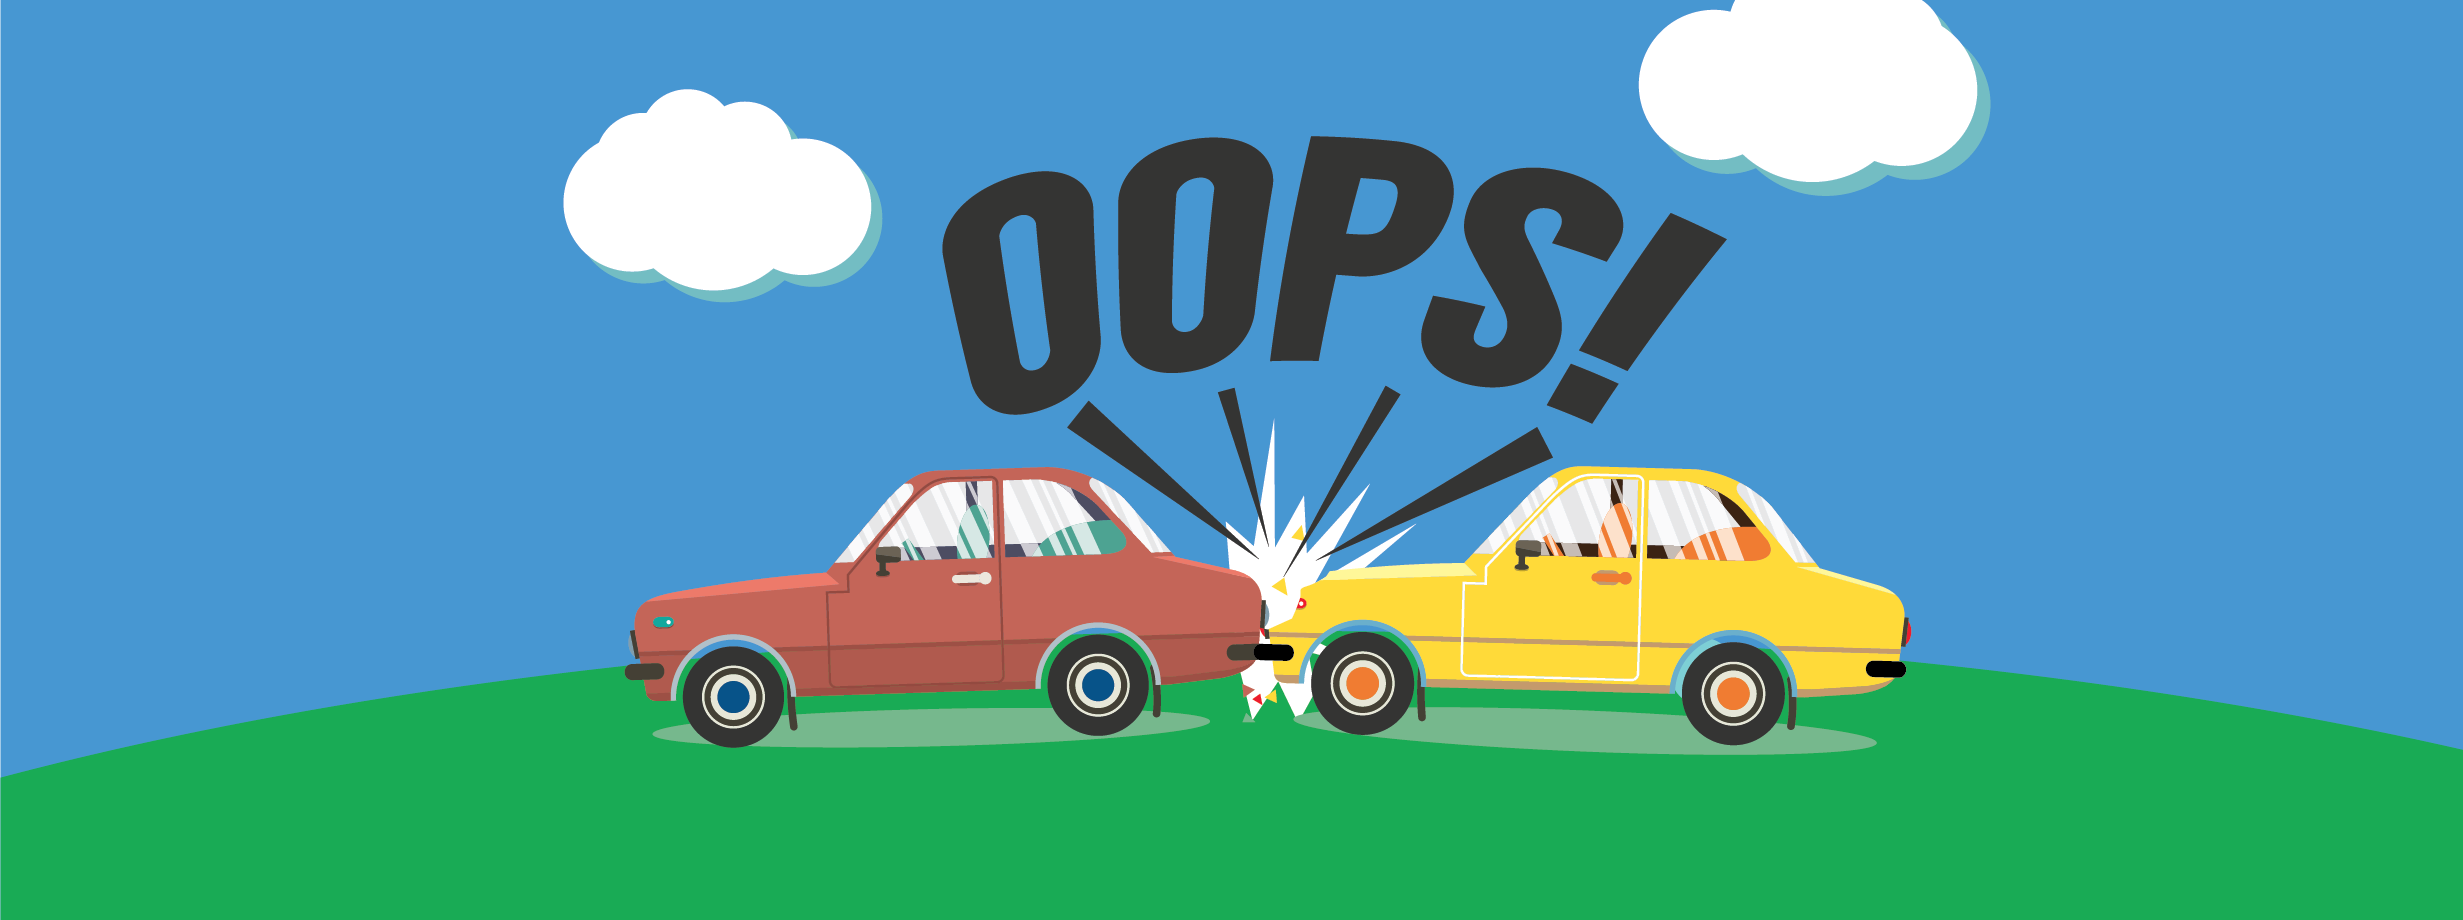 Oops – 404 Error Accident